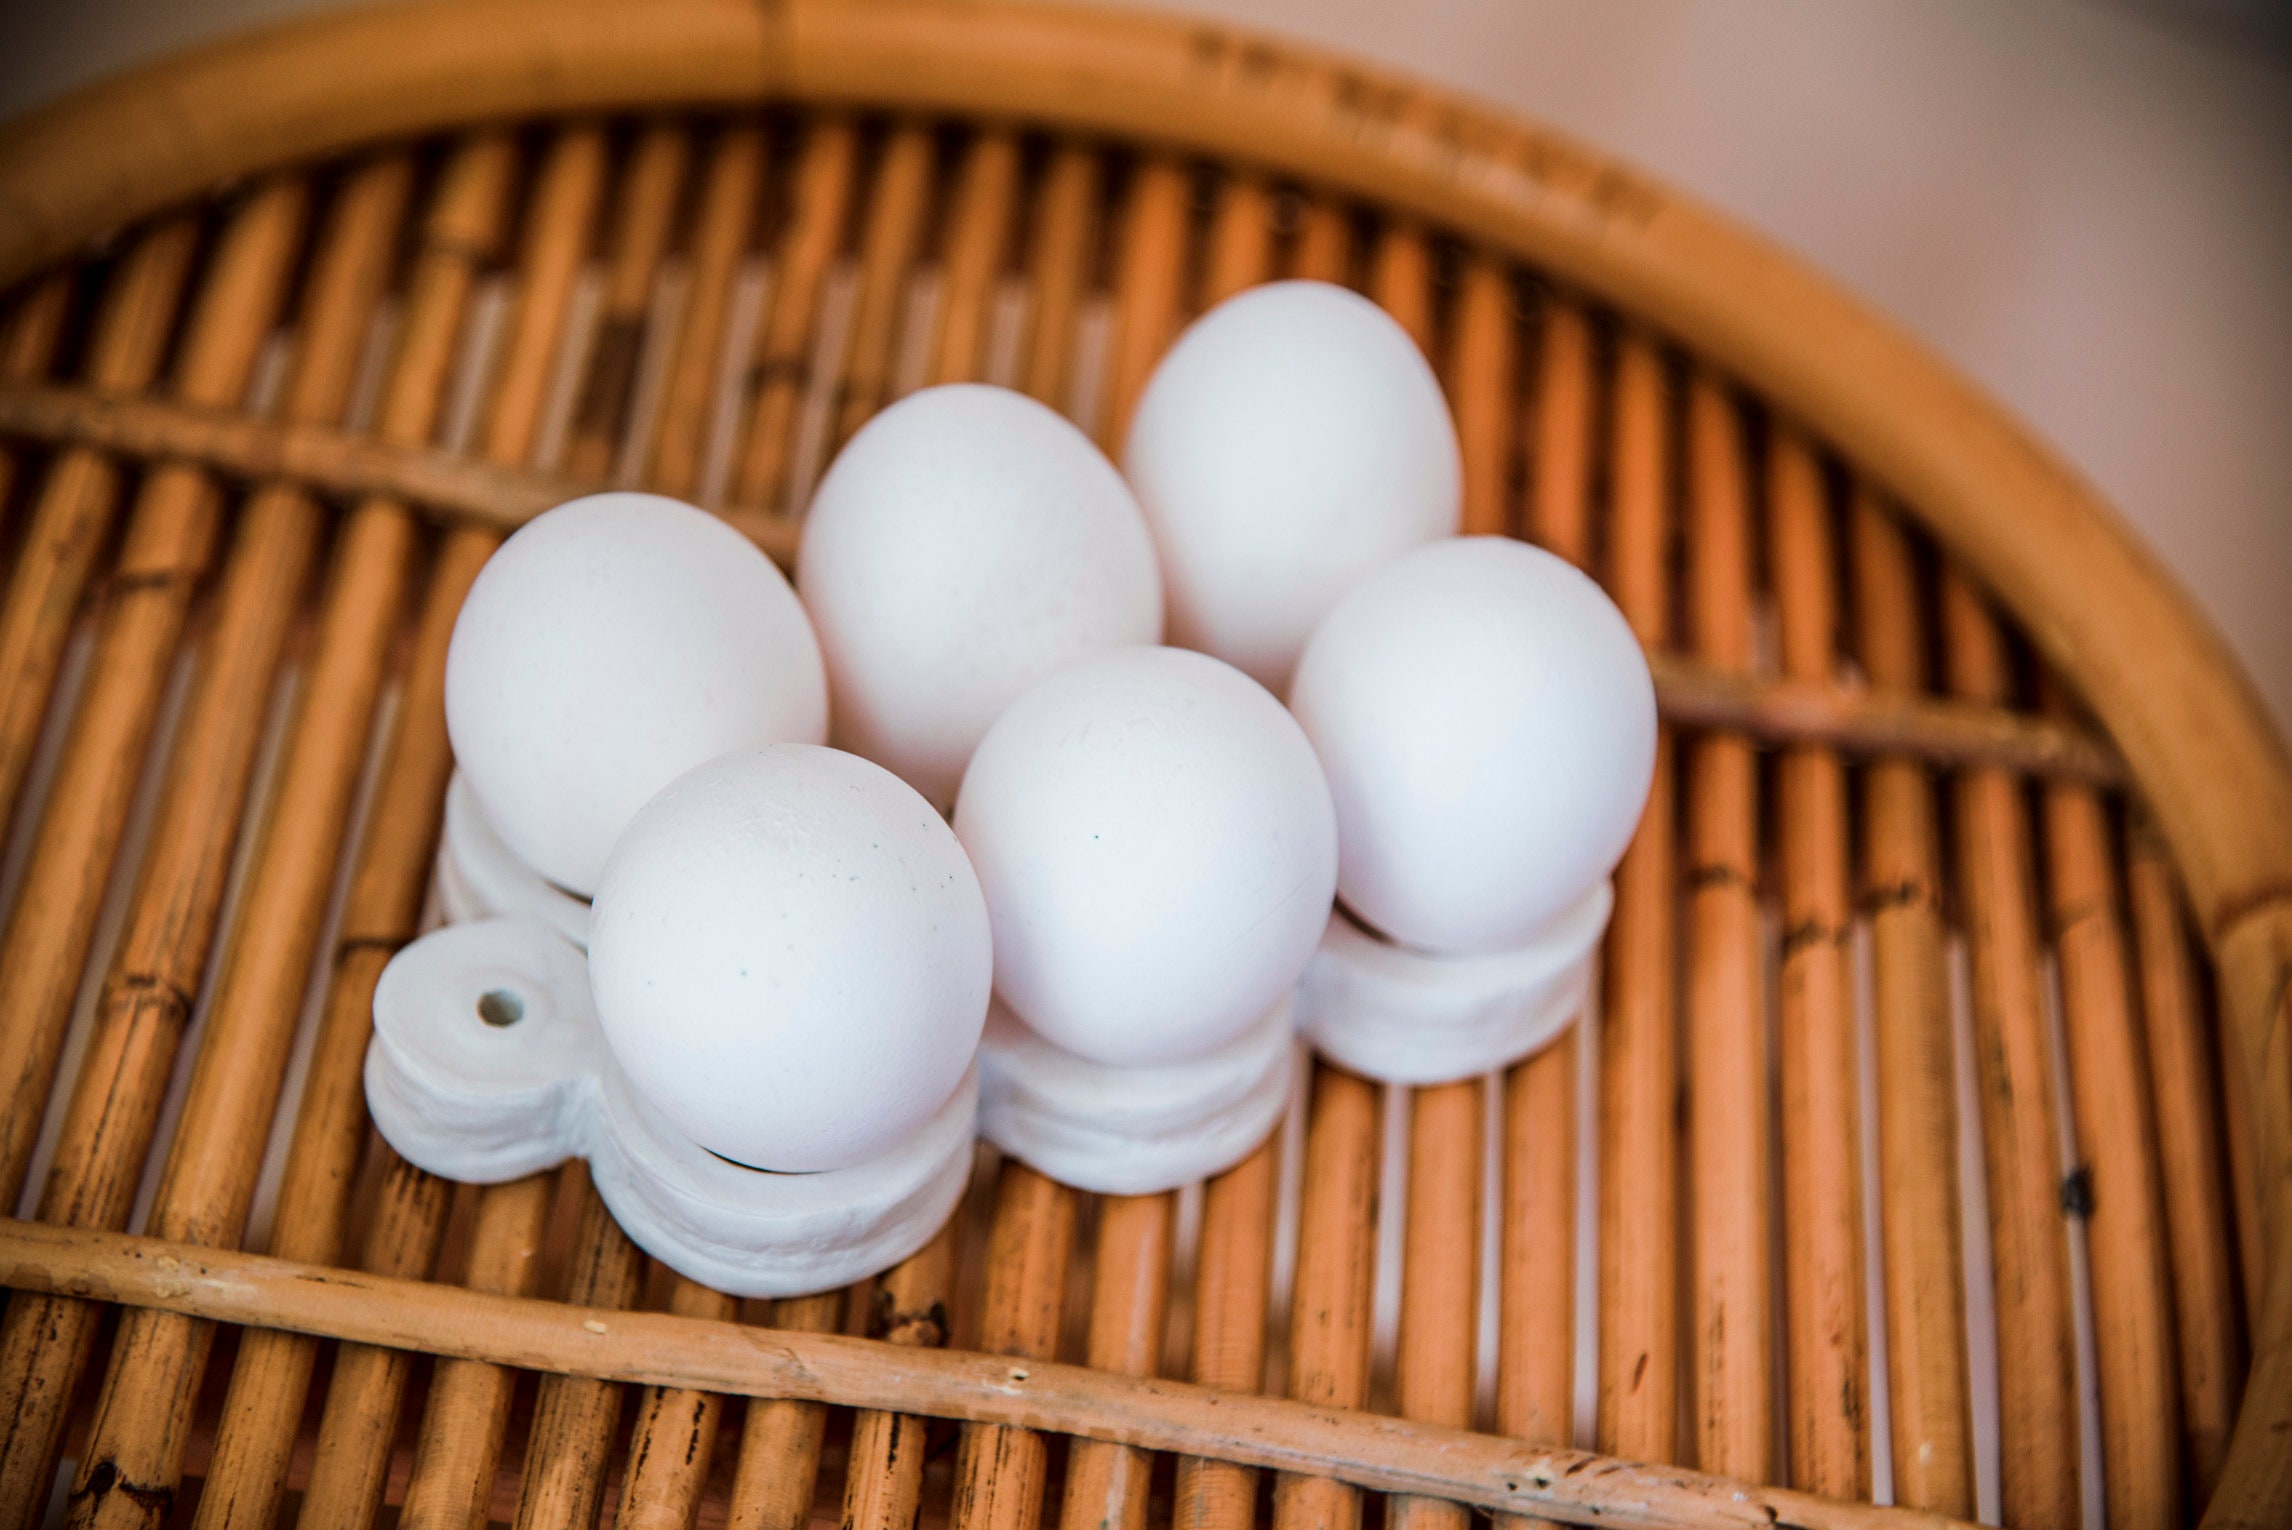 6 Hole Ceramic Egg Tray, Egg Holder, Kitchen Storage 